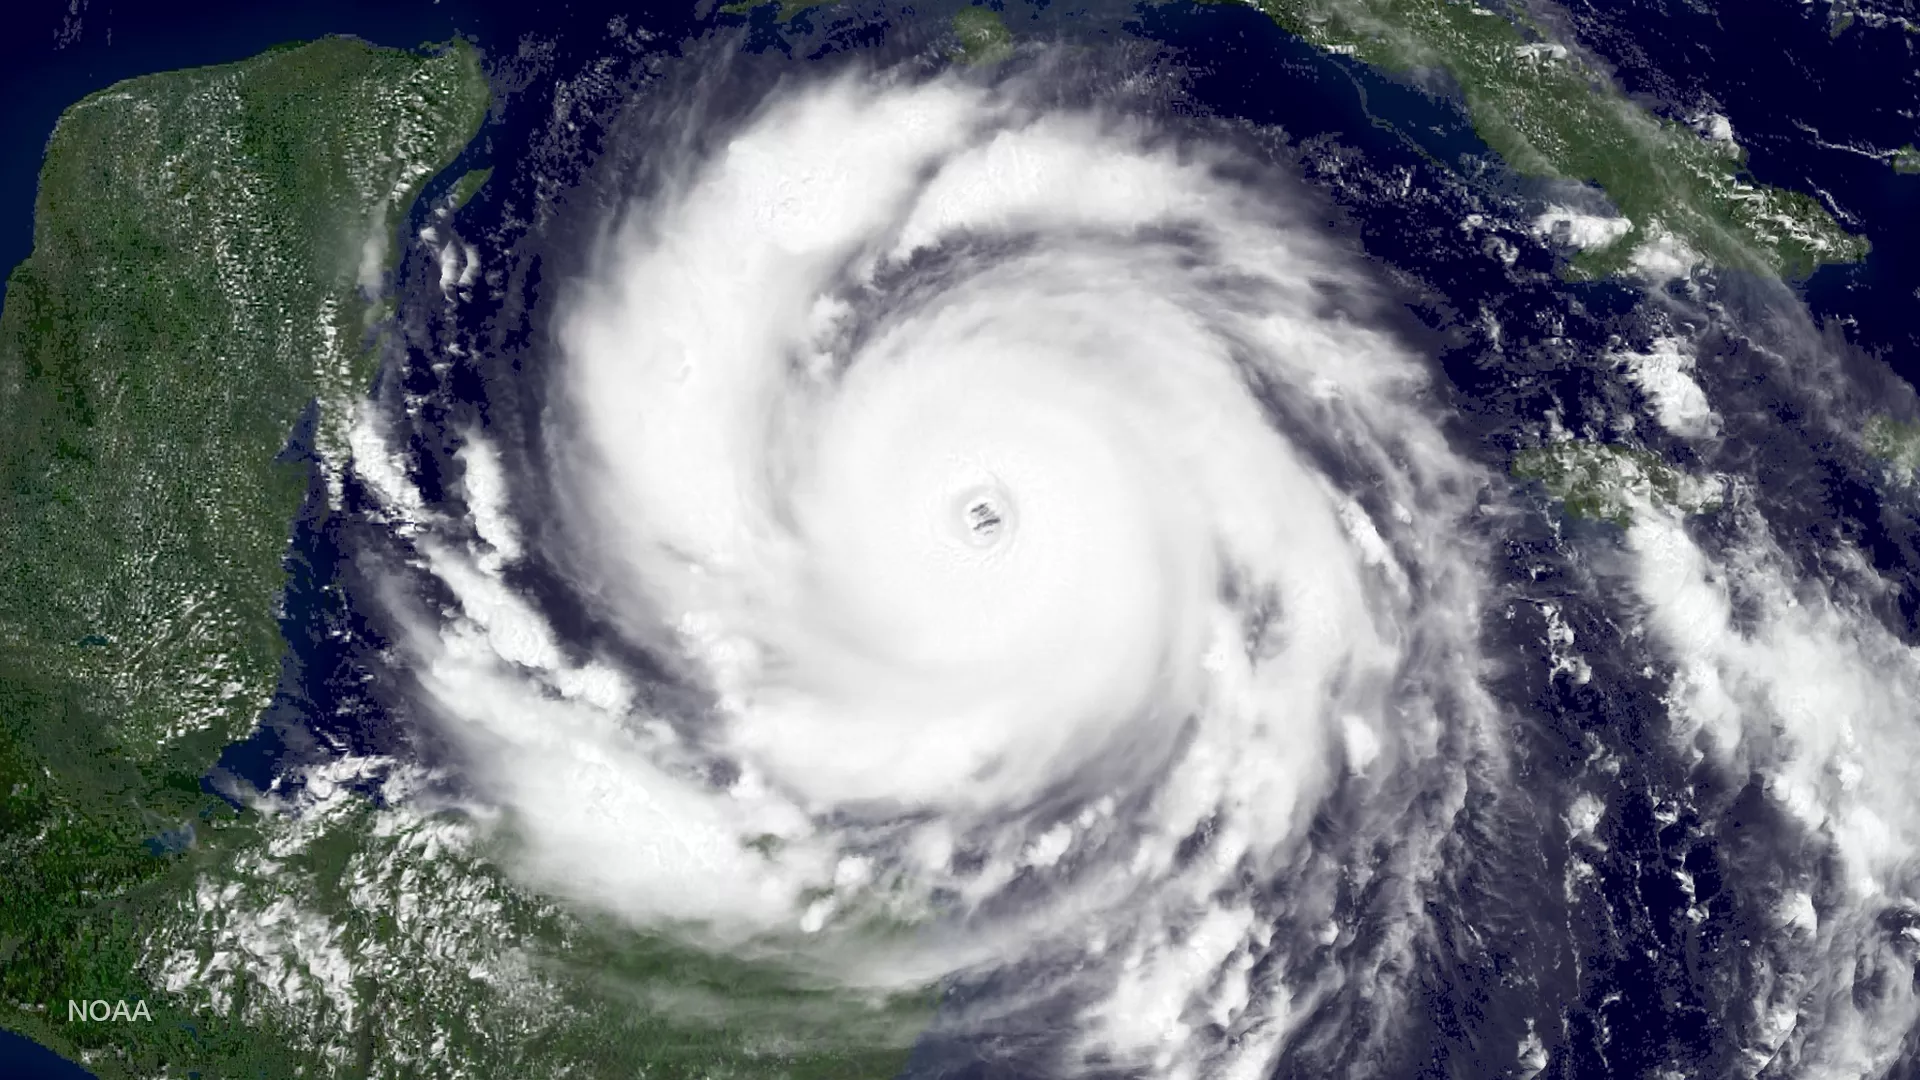 Hurricane Dean in the Caribbean Sea, August 20, 2007